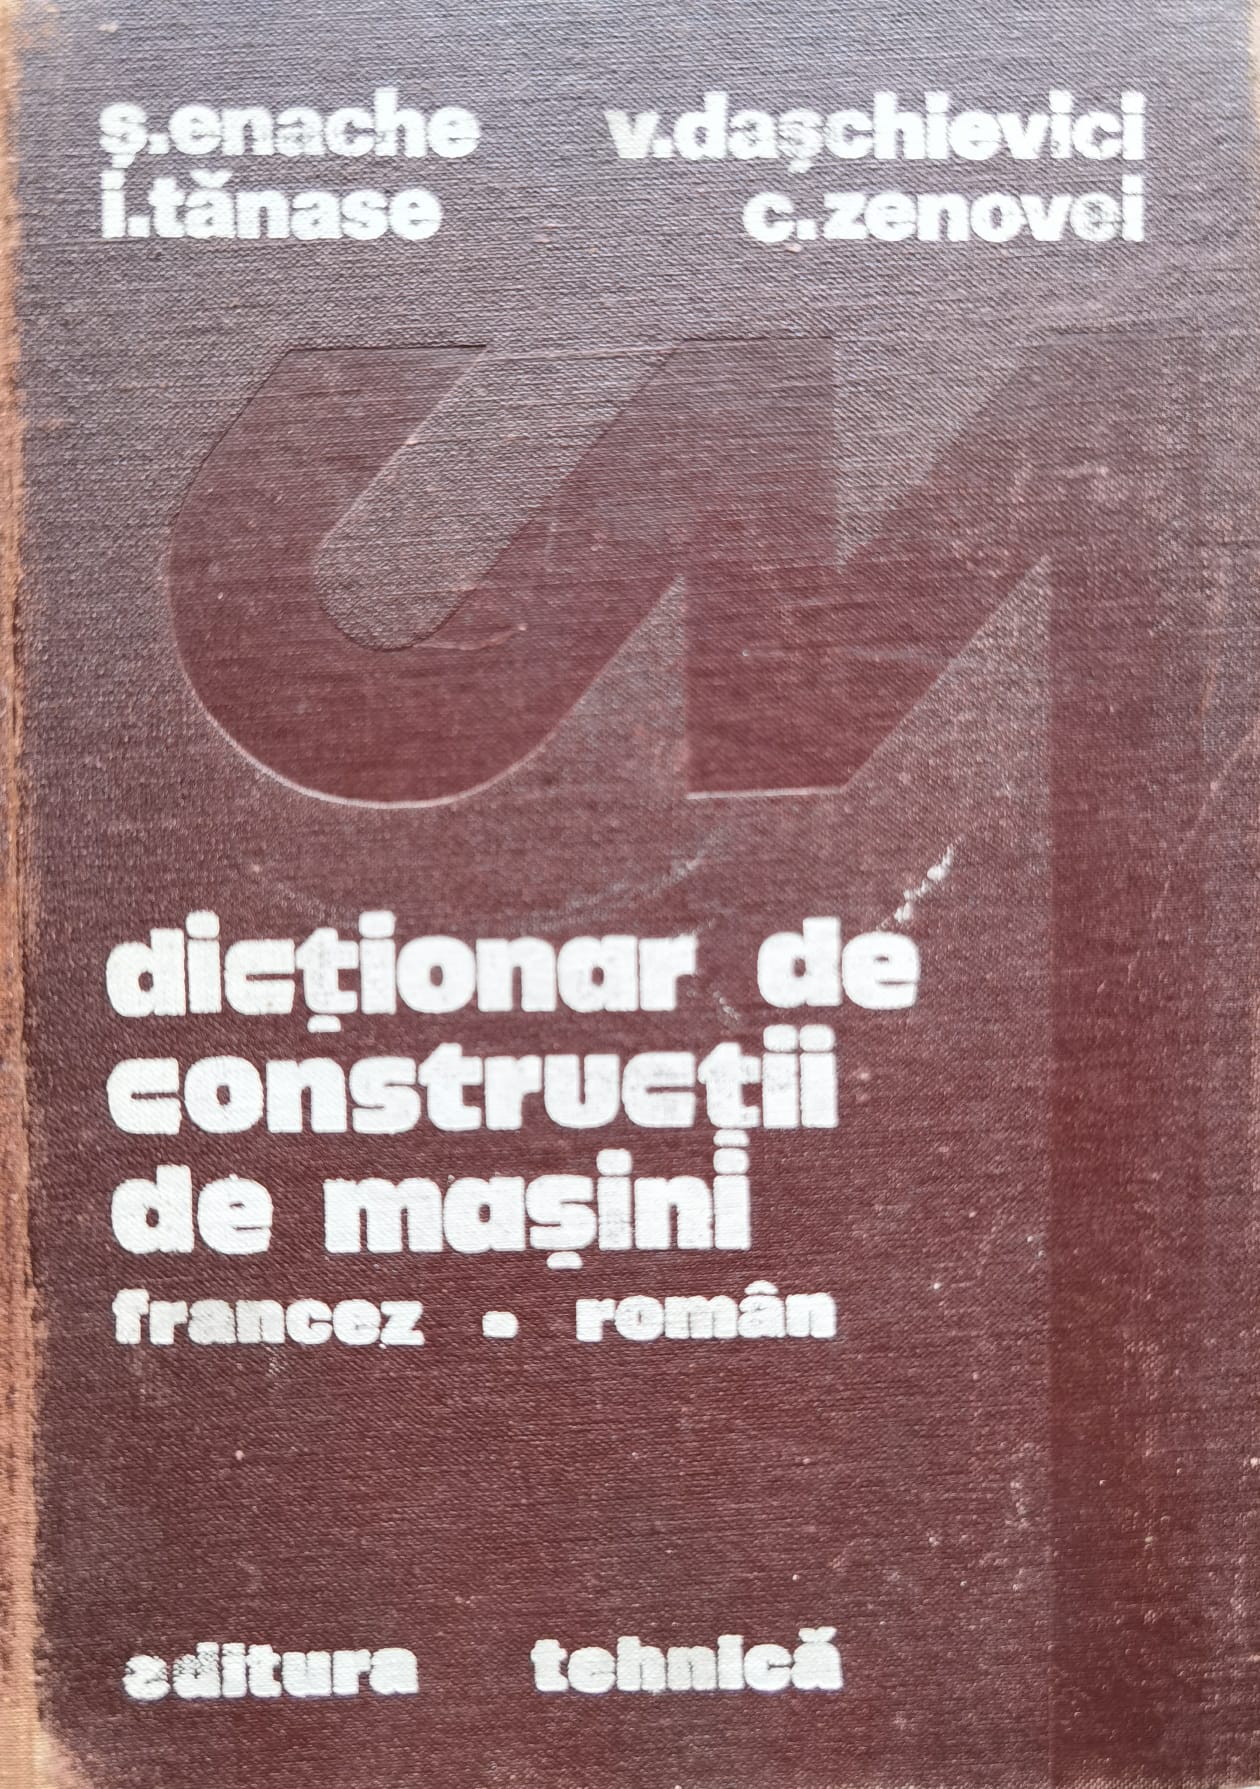 dictionar de constructii de masini francez-roman                                                     colectiv                                                                                            